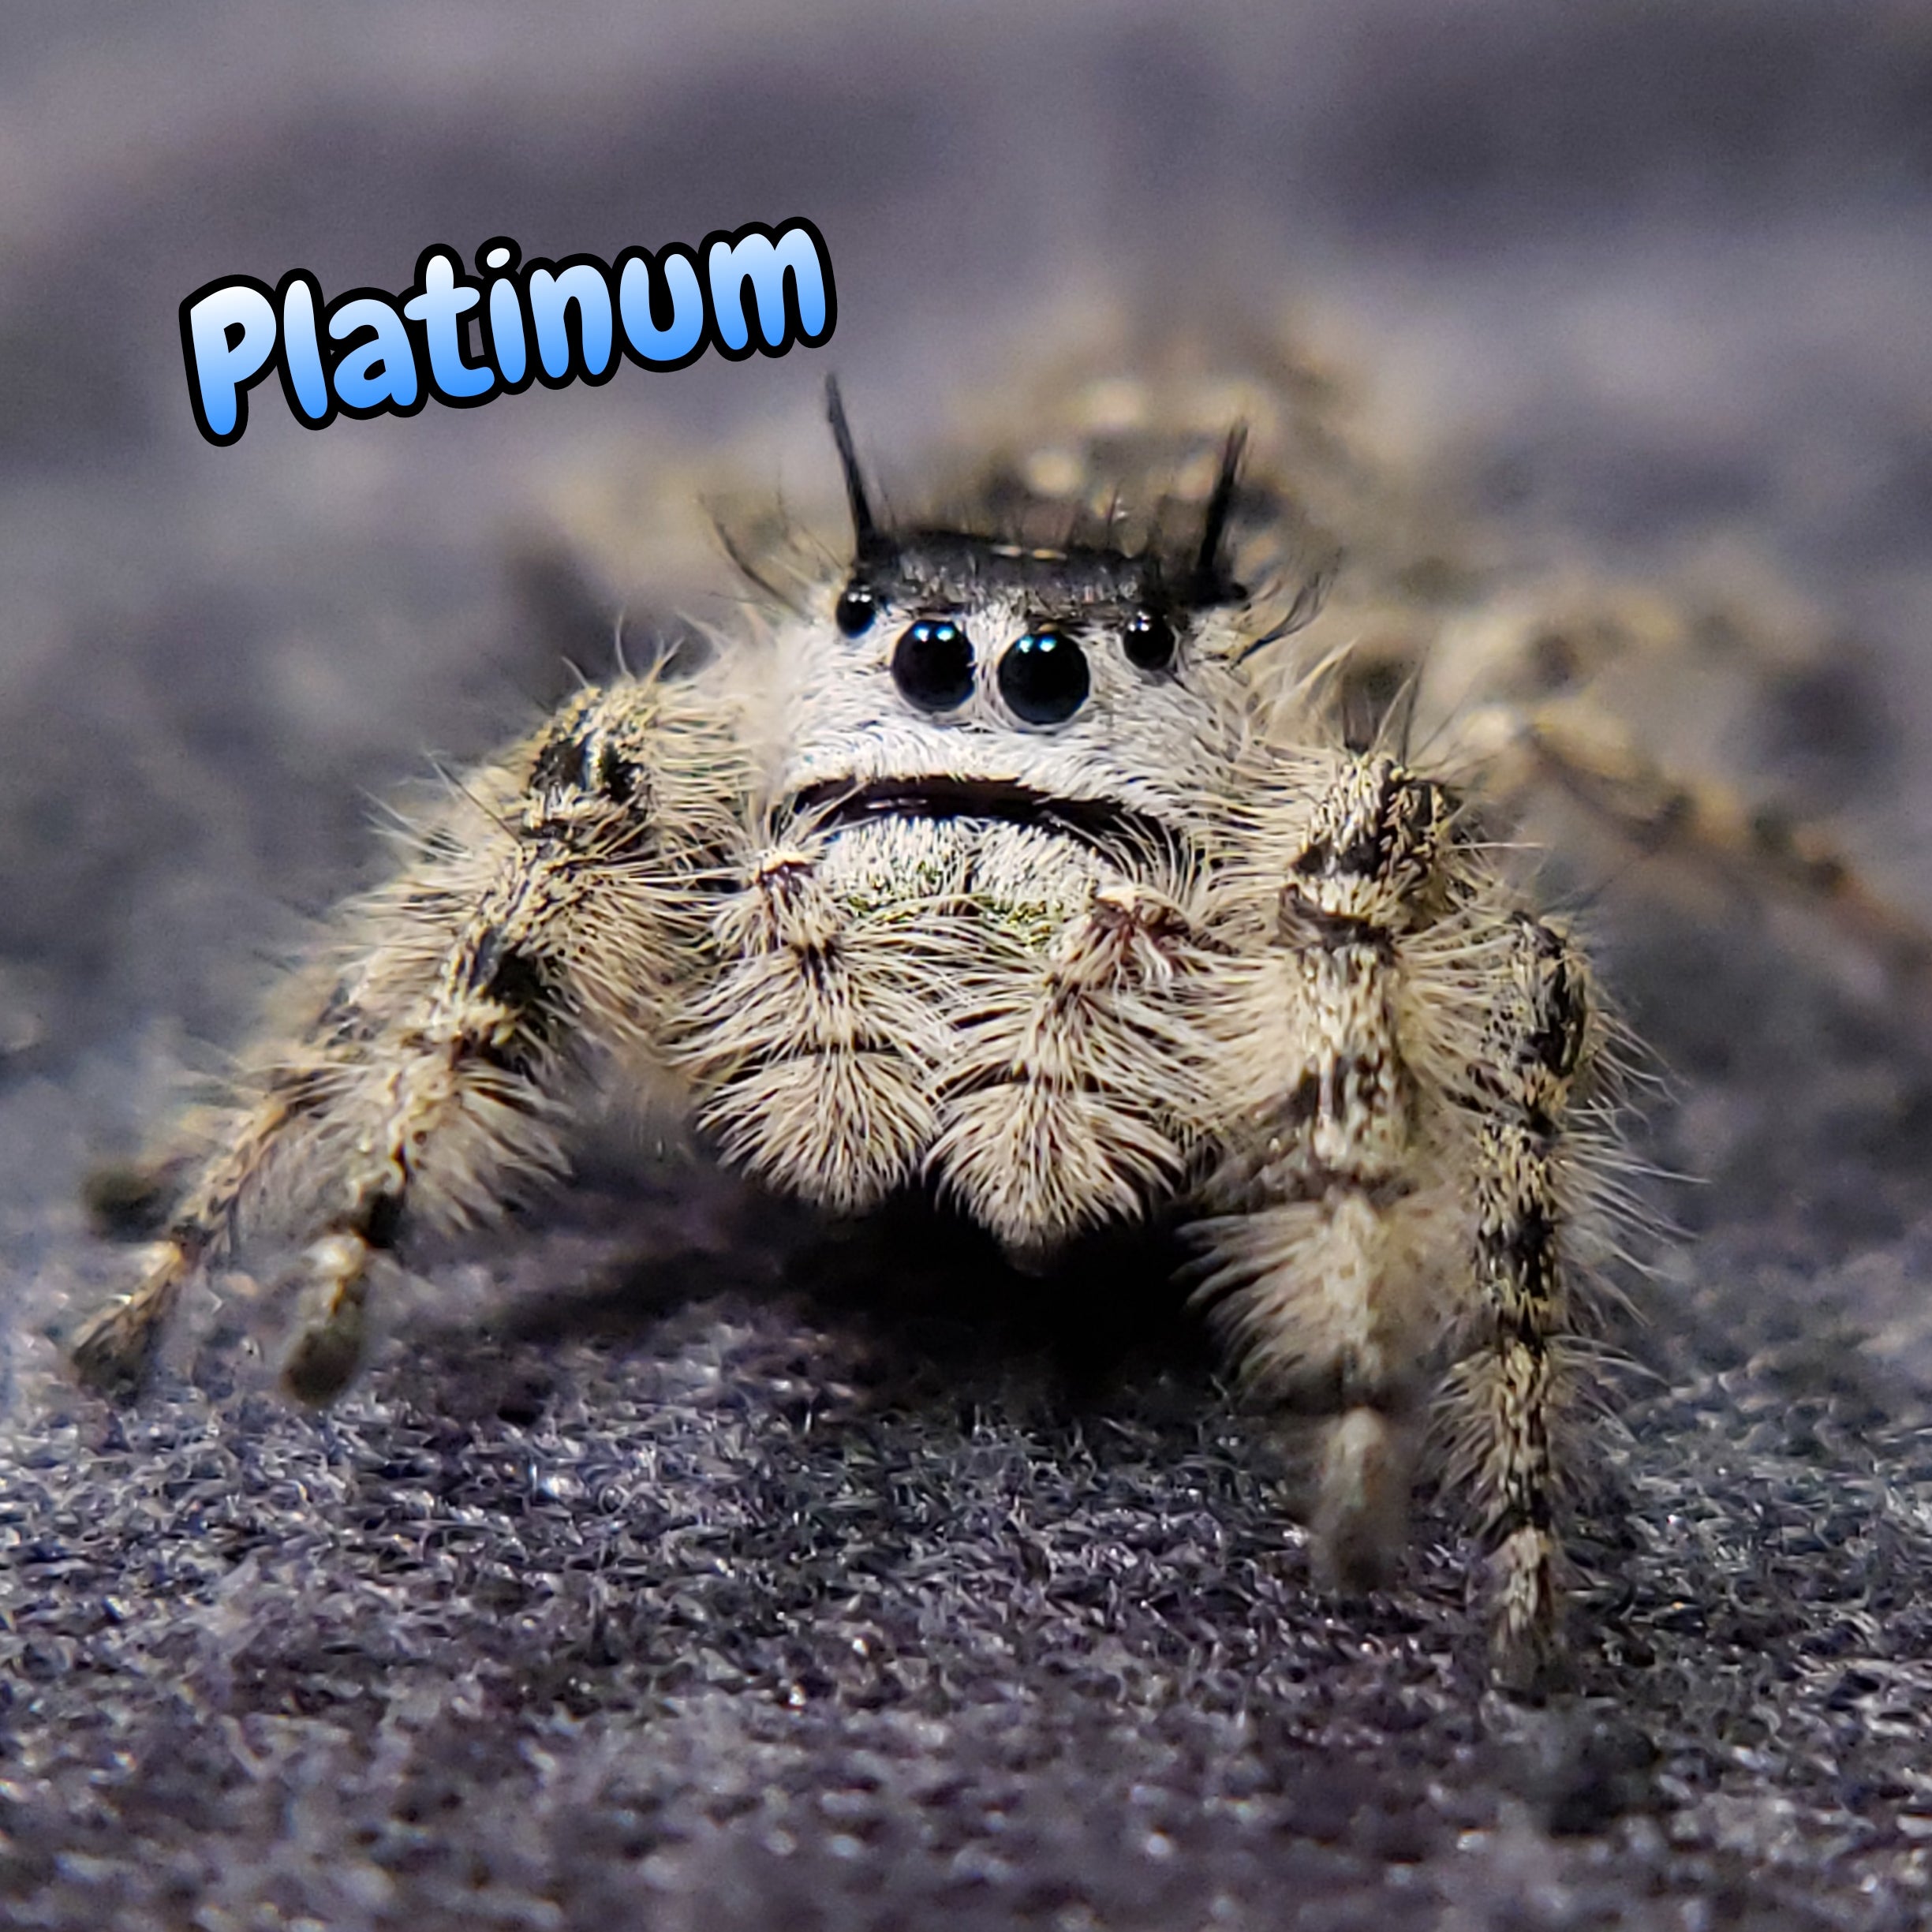 Otiosus Jumping Spider "Platinum" (High White)